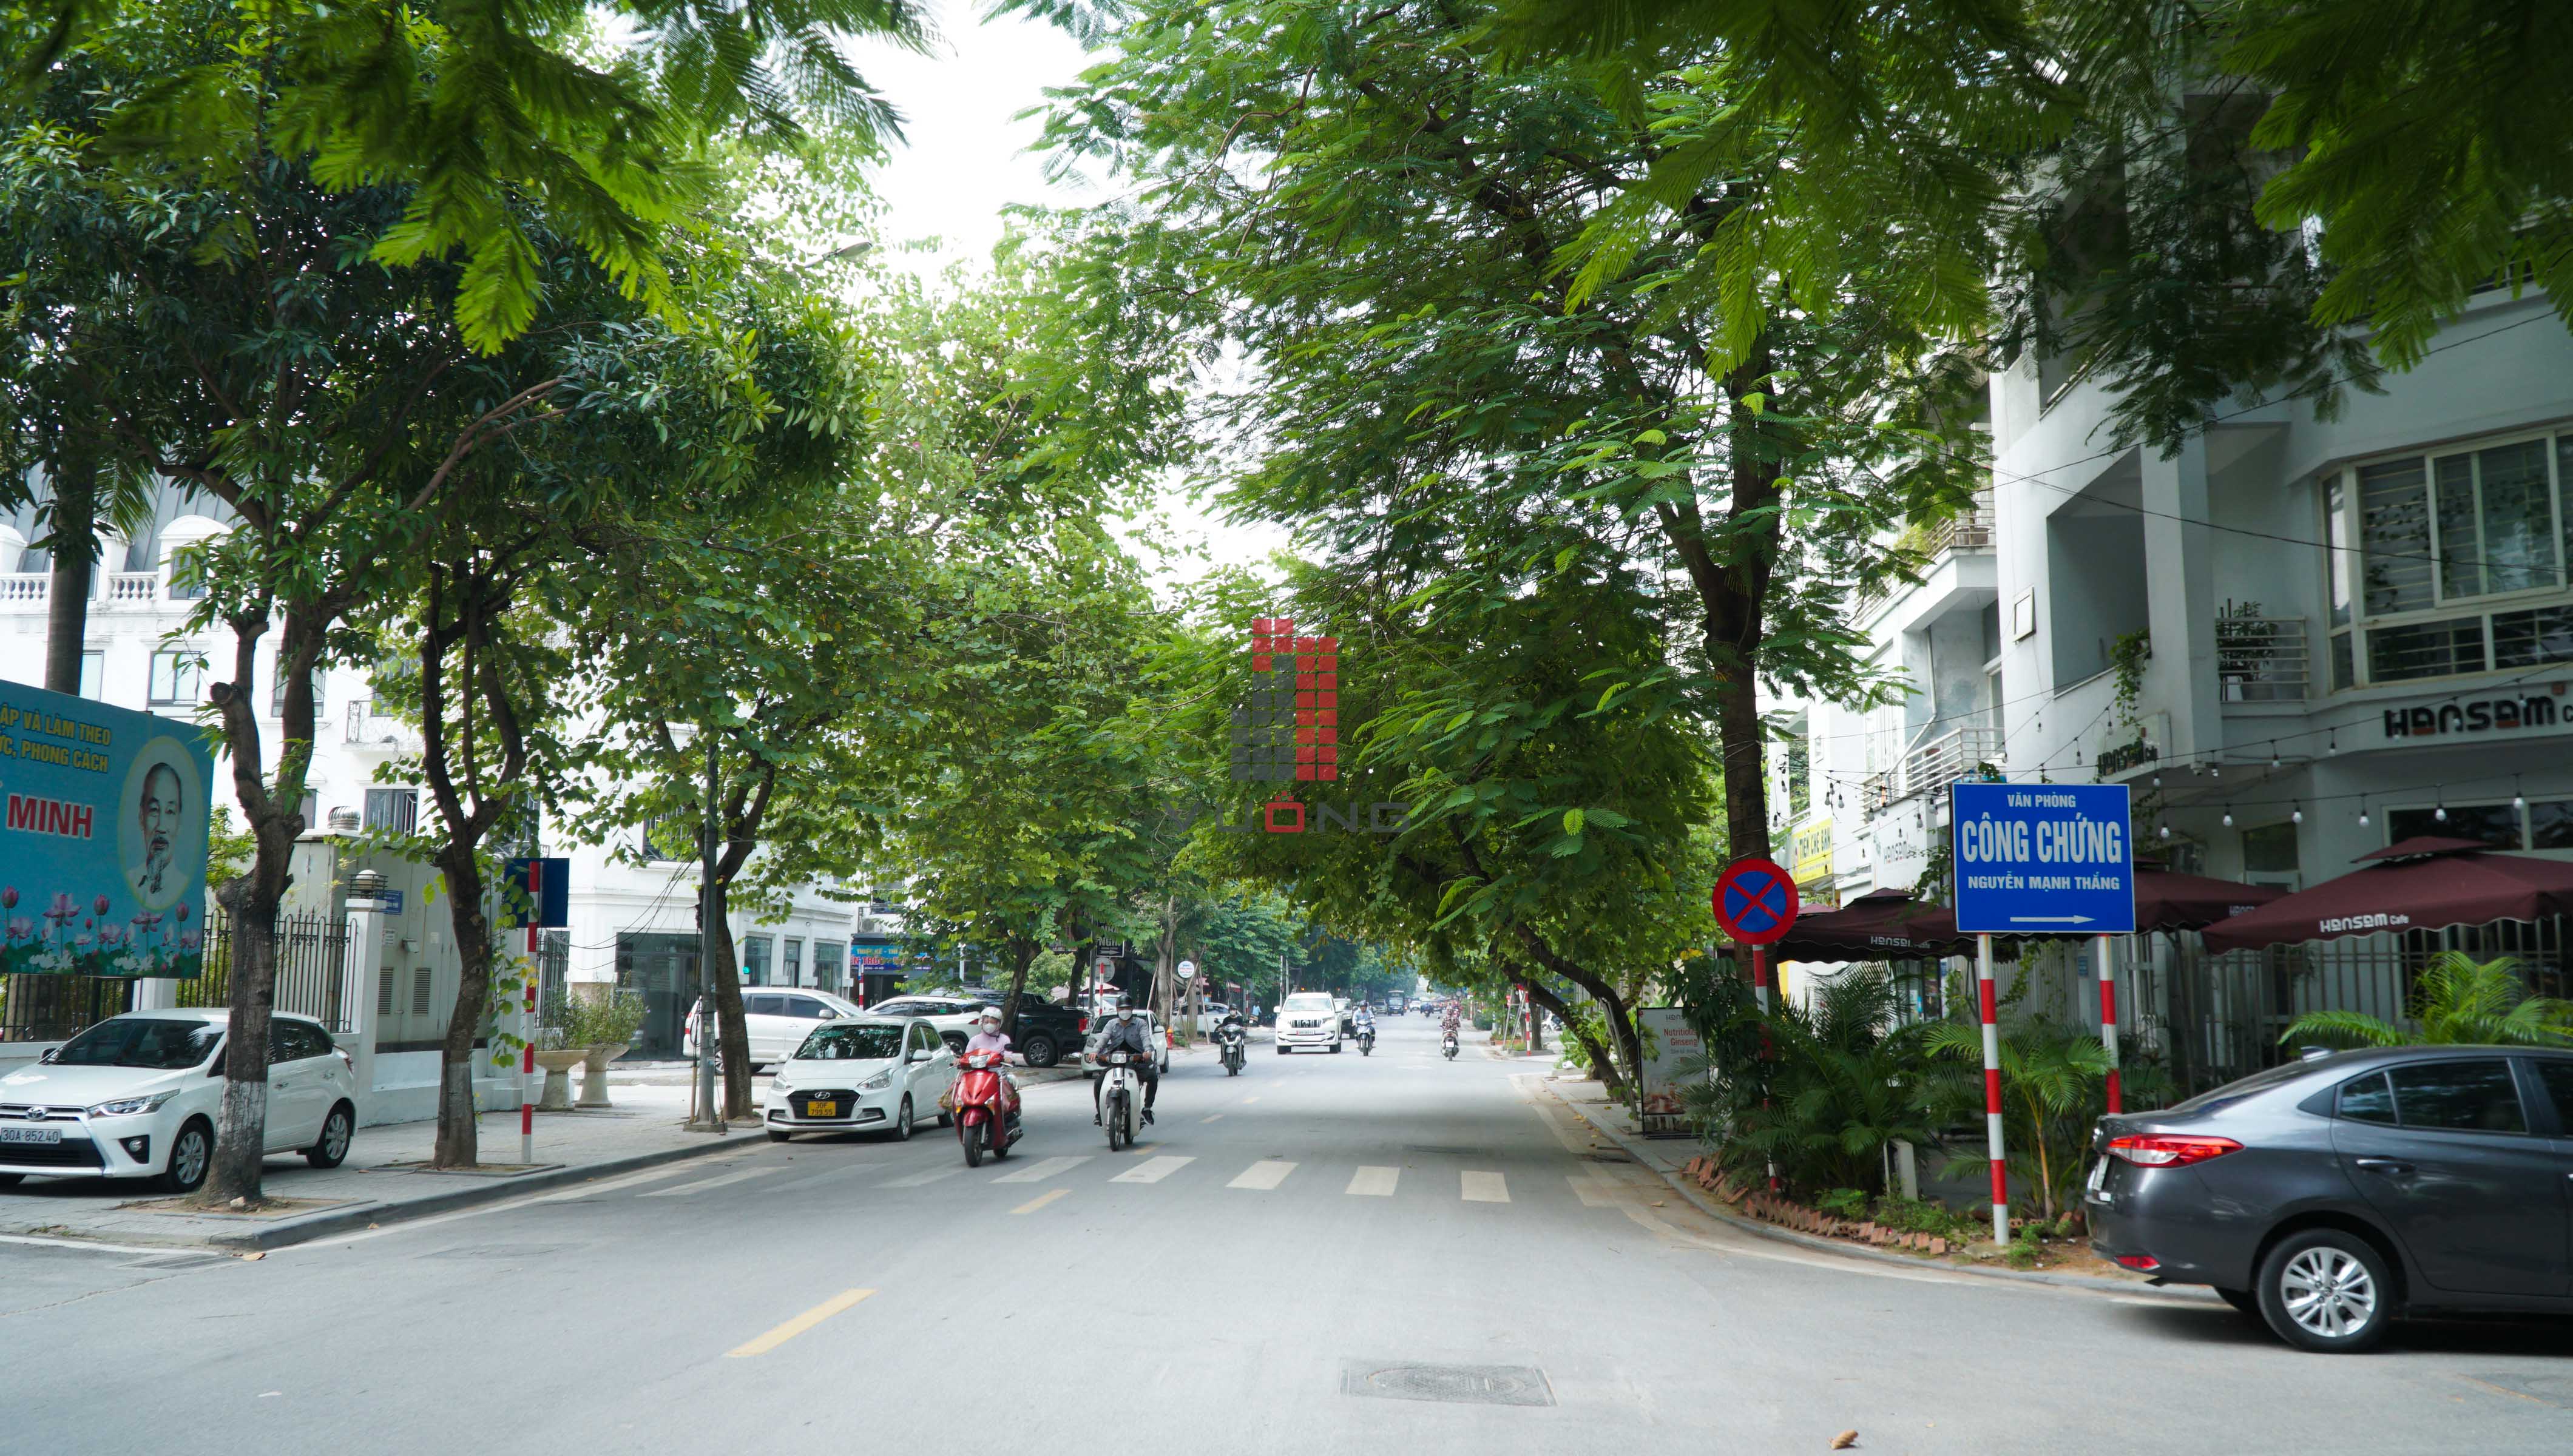 Bán nhà Liền kề phân khu LKVP, mặt đường 12m, nhà hướng Đông - Nam, Khu đô thị Văn Phú [#H4122.2887]